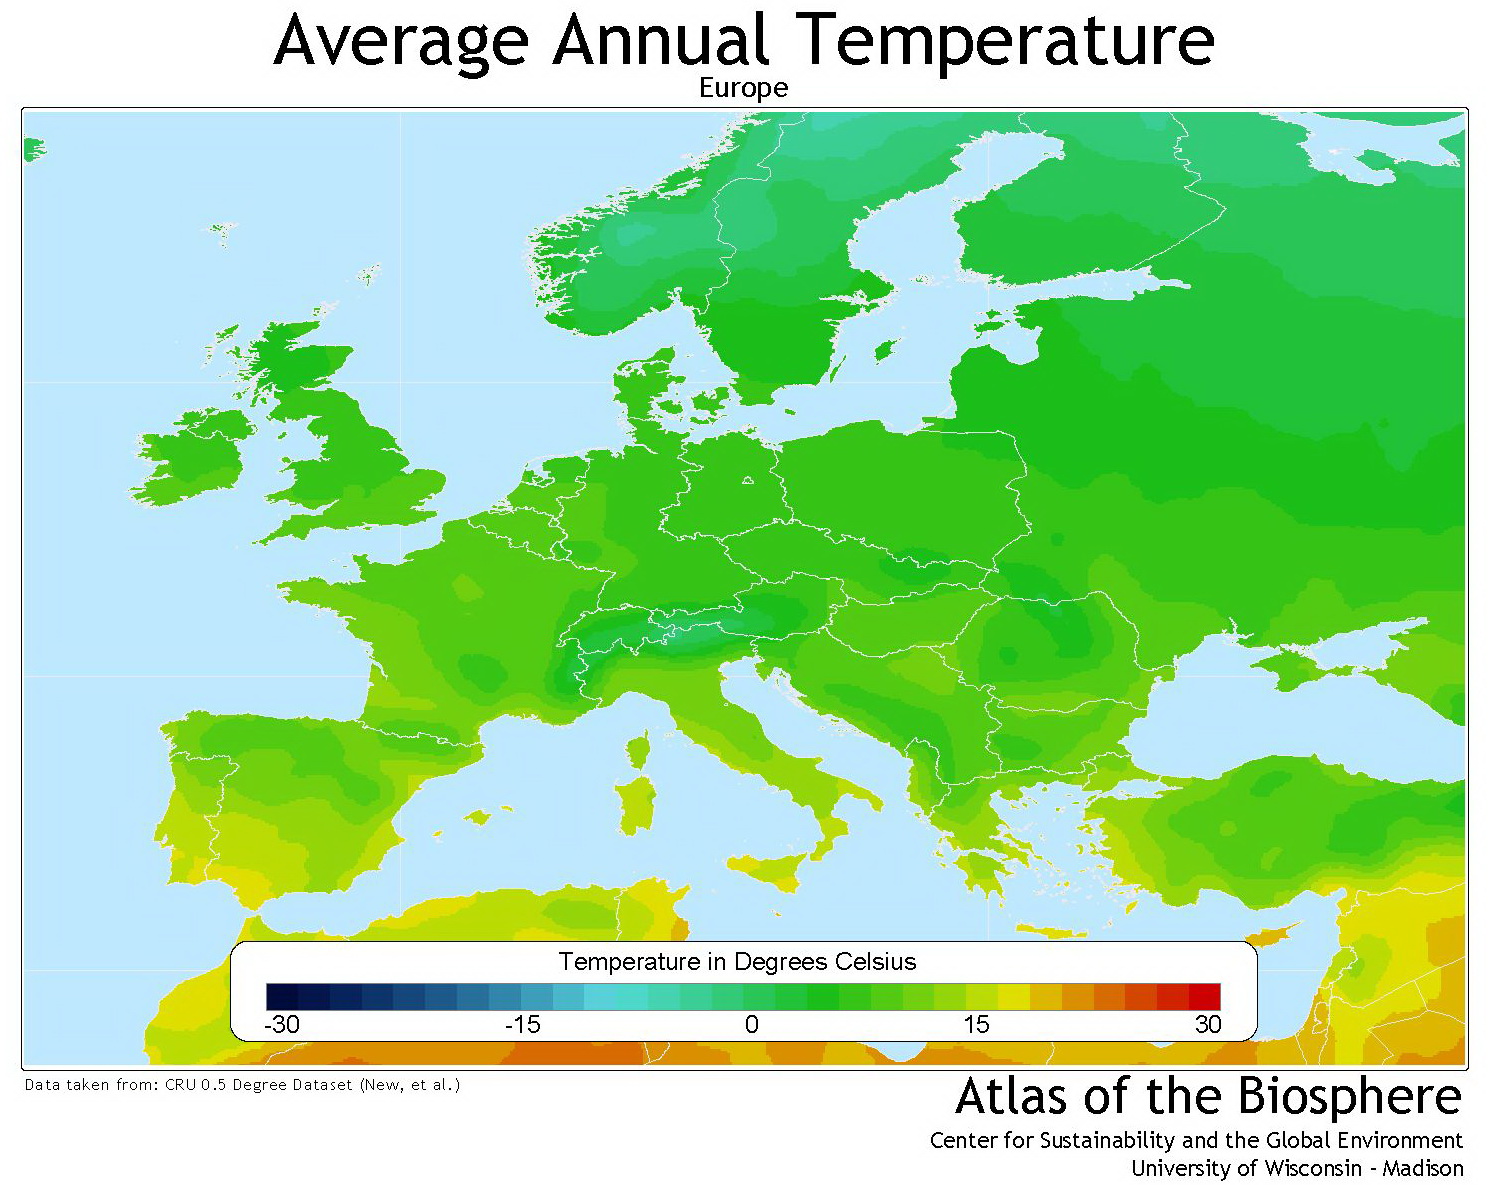 Europe average annual temperature